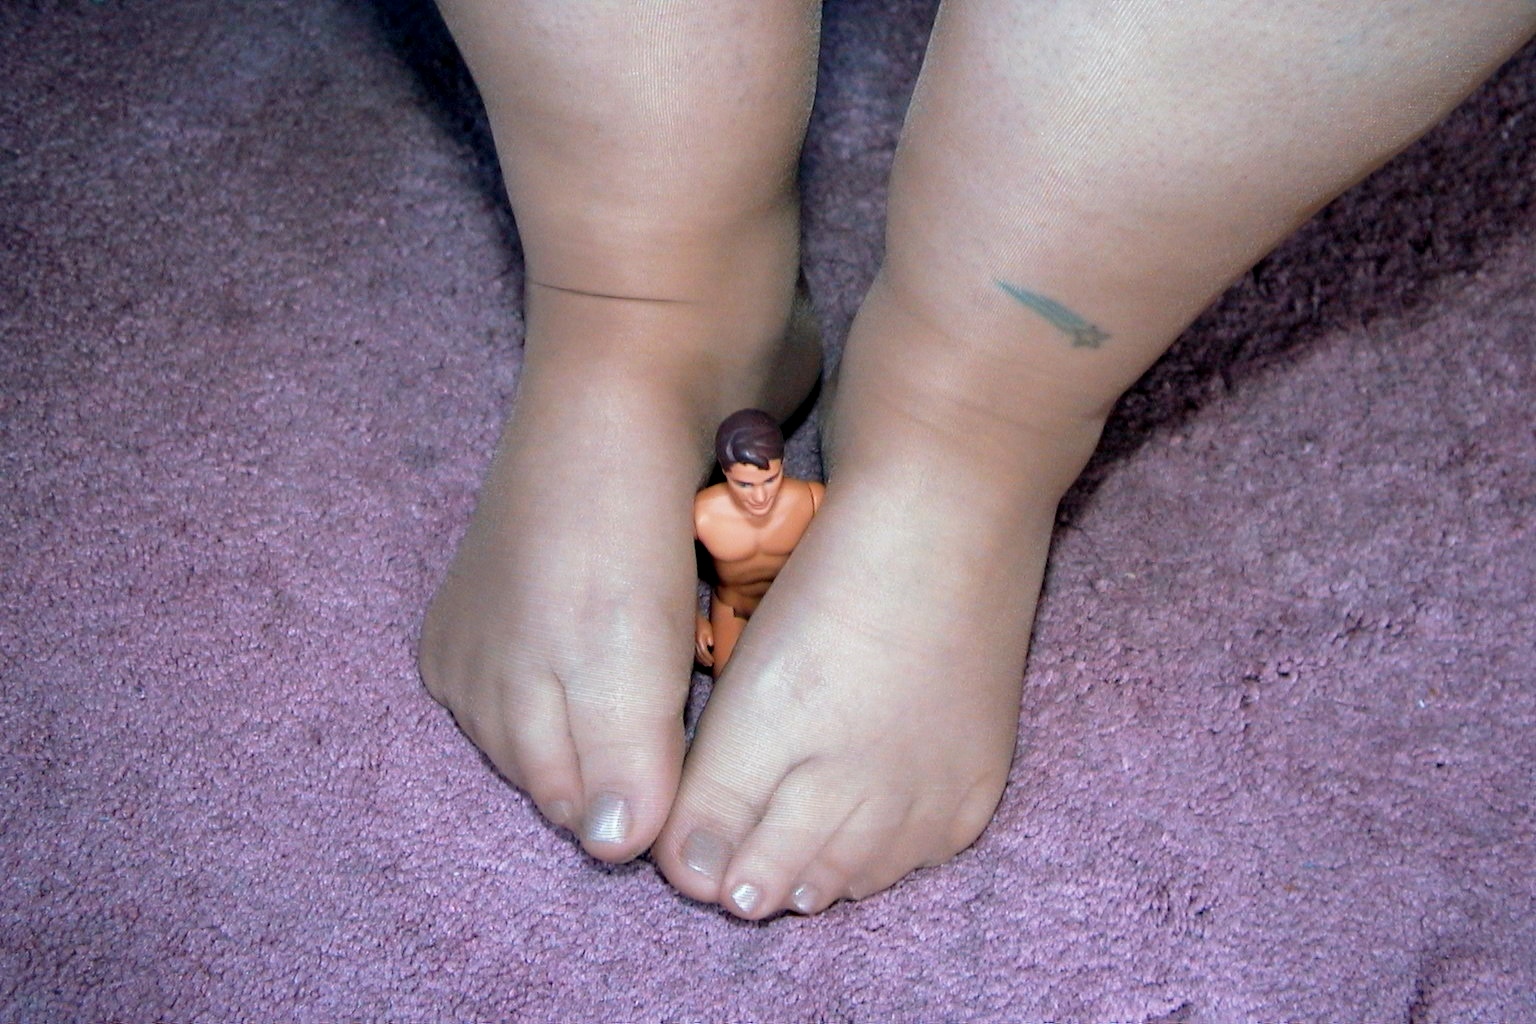 Giantess Pantyhose Feet - And pantyhose fetish videos giantess | TubeZZZ Porn Photos